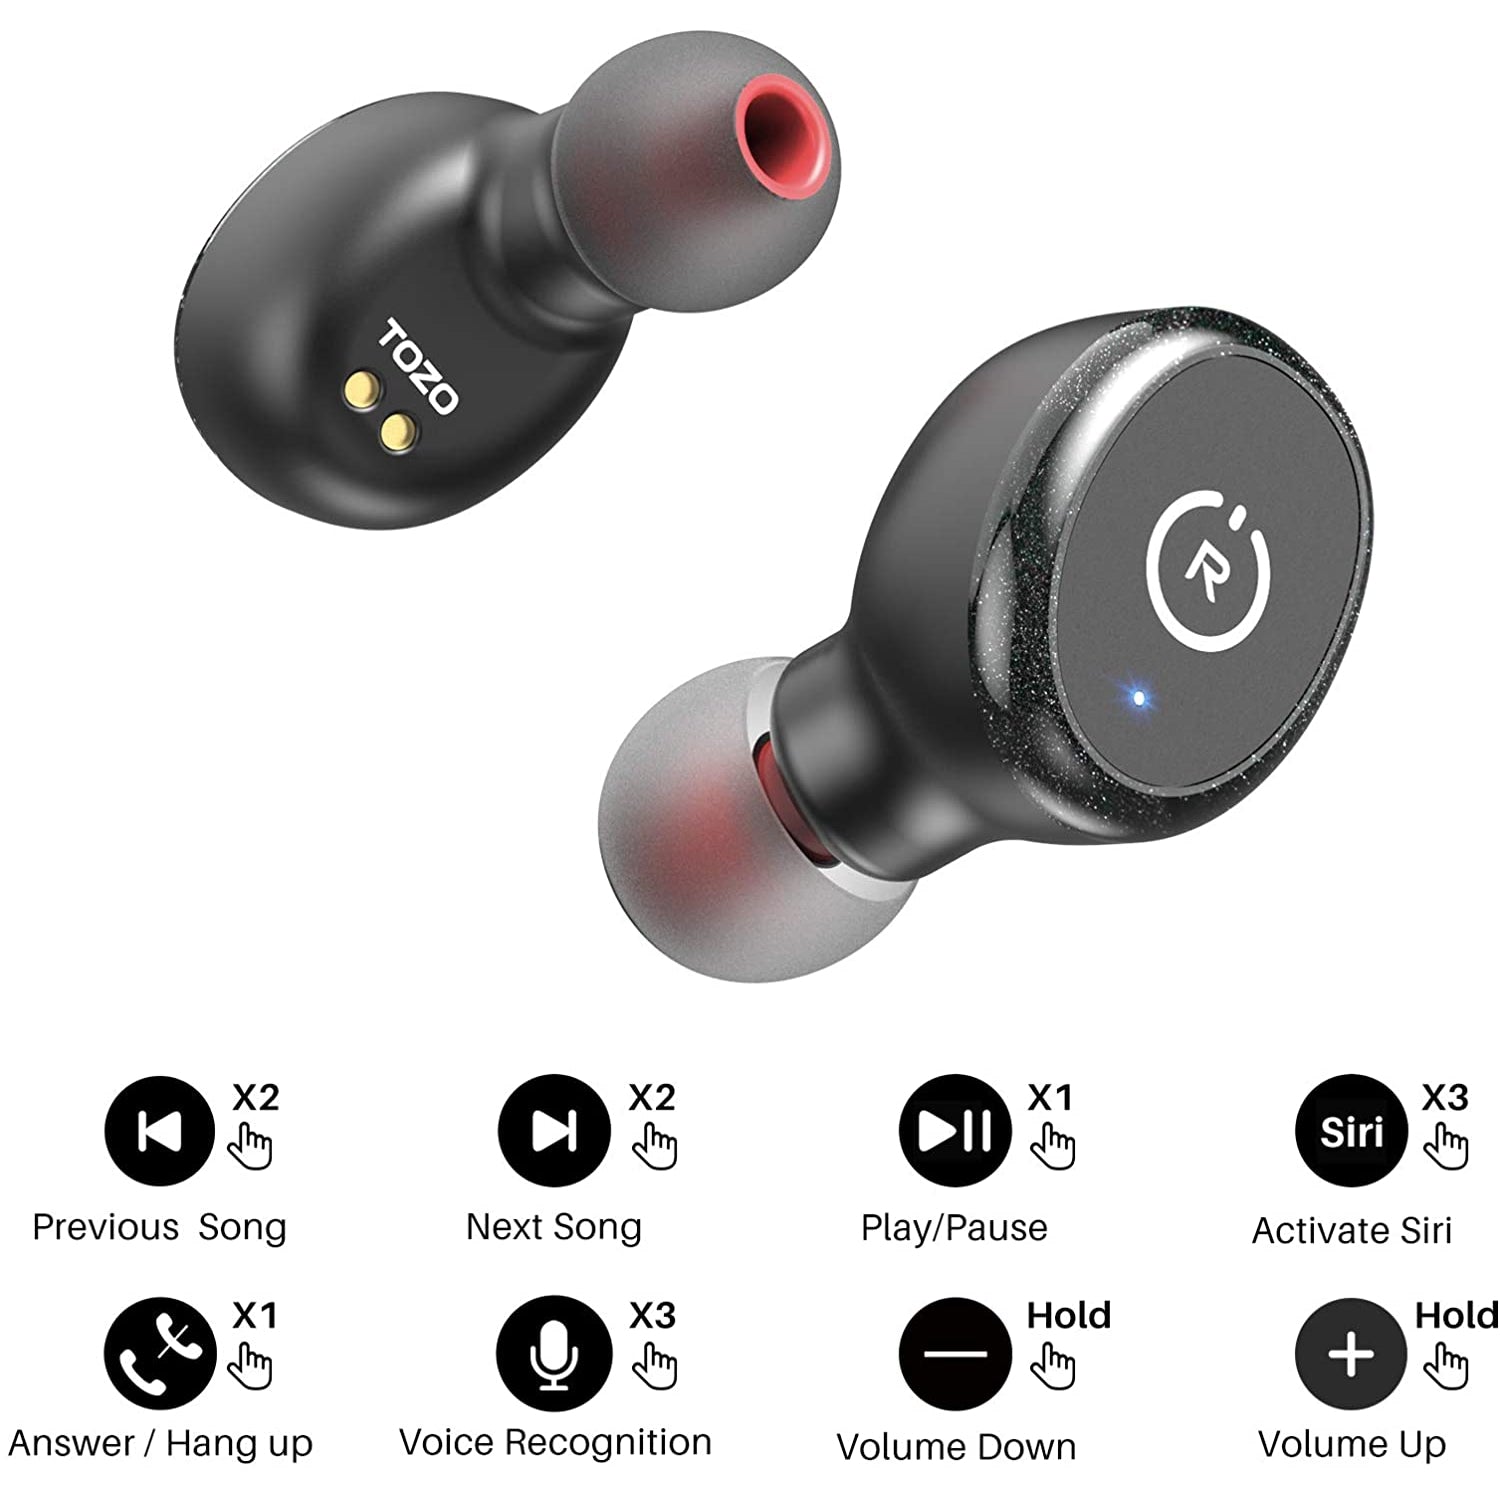 Tozo T10 Bluetooth 5.0 Earbuds True Wireless Stereo Earphones Headphones IPX8 Waterproof in Ear Wireless Charging Case Built in Mic Headset